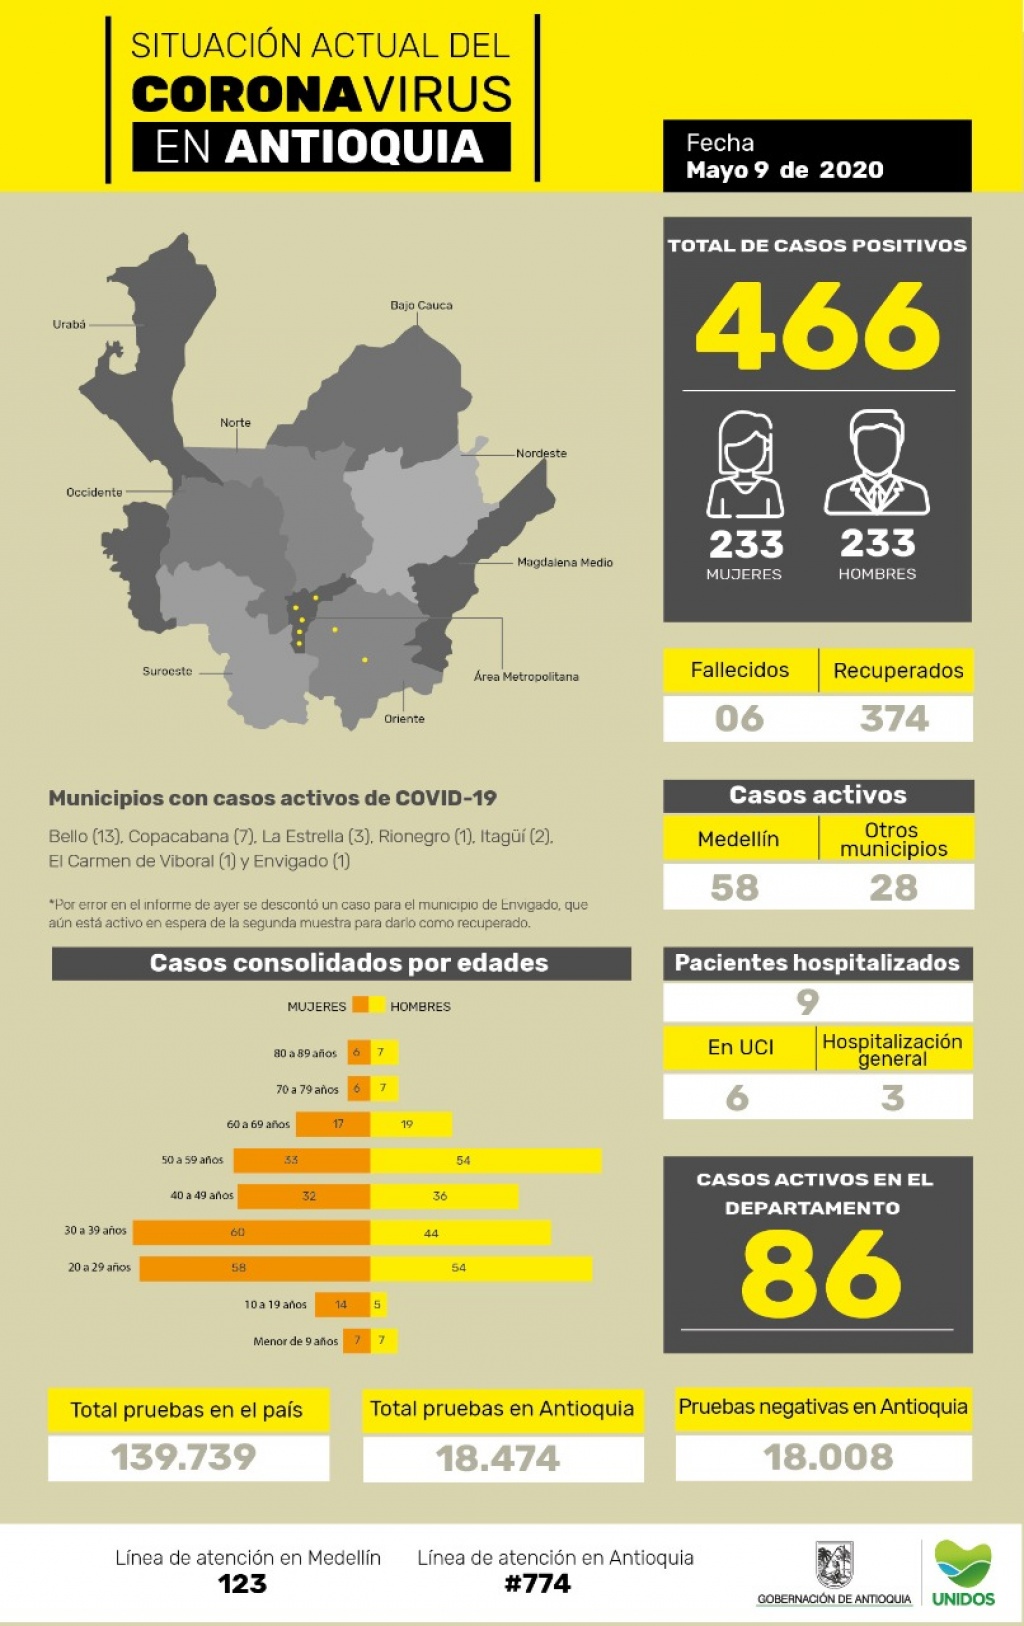 Con 2 nuevos casos reportados, el número total de personas contagiadas por COVID-19 en Antioquia llega a 466